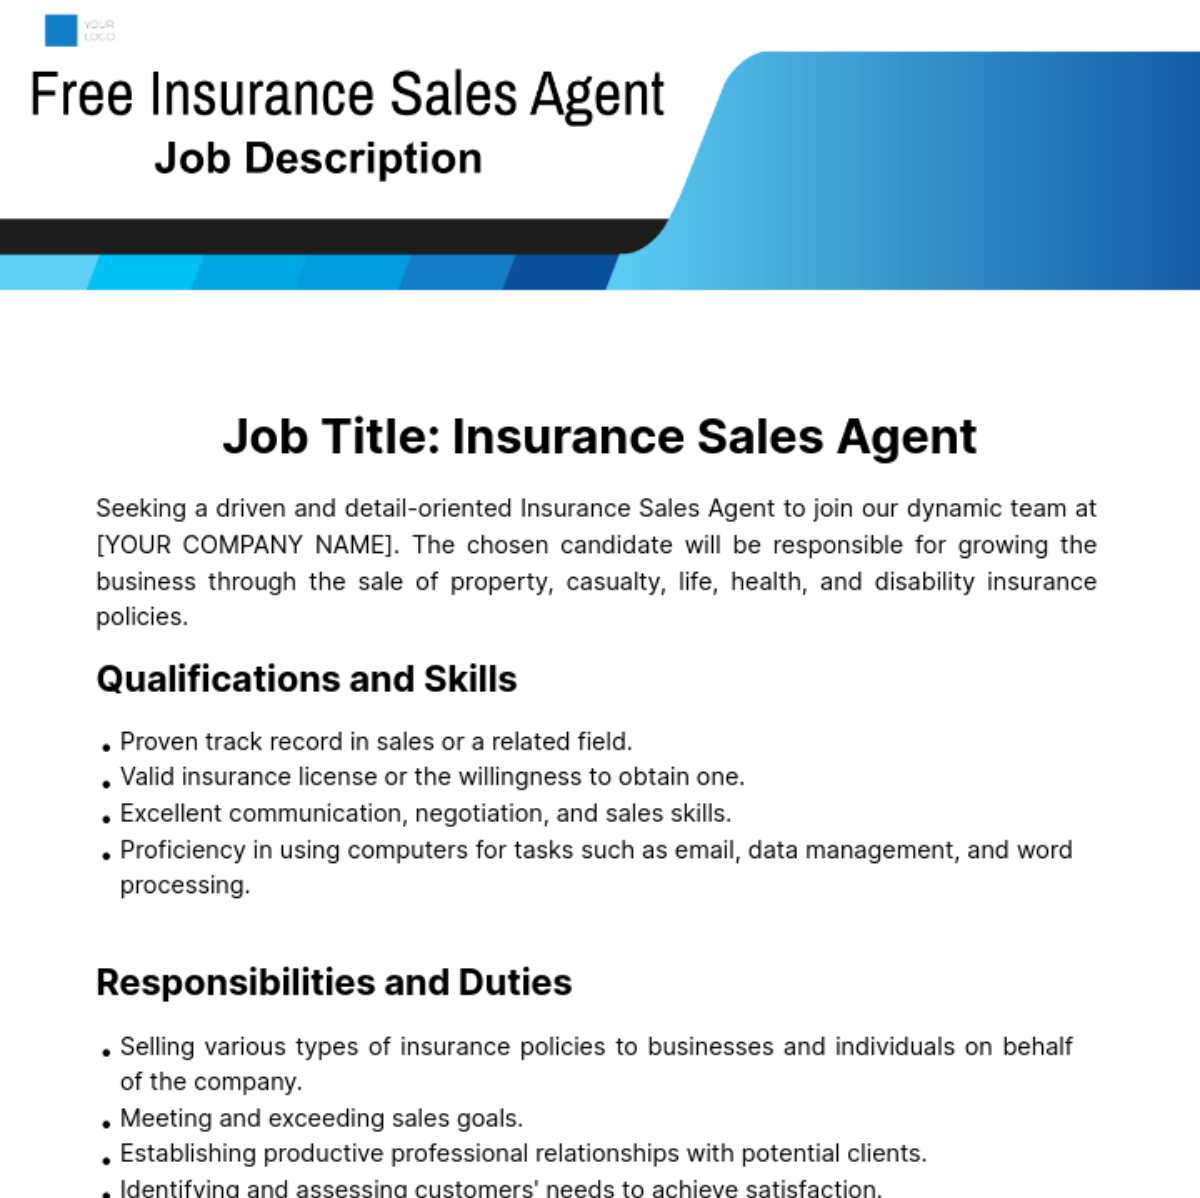 Free Insurance Sales Agent Job Description Template